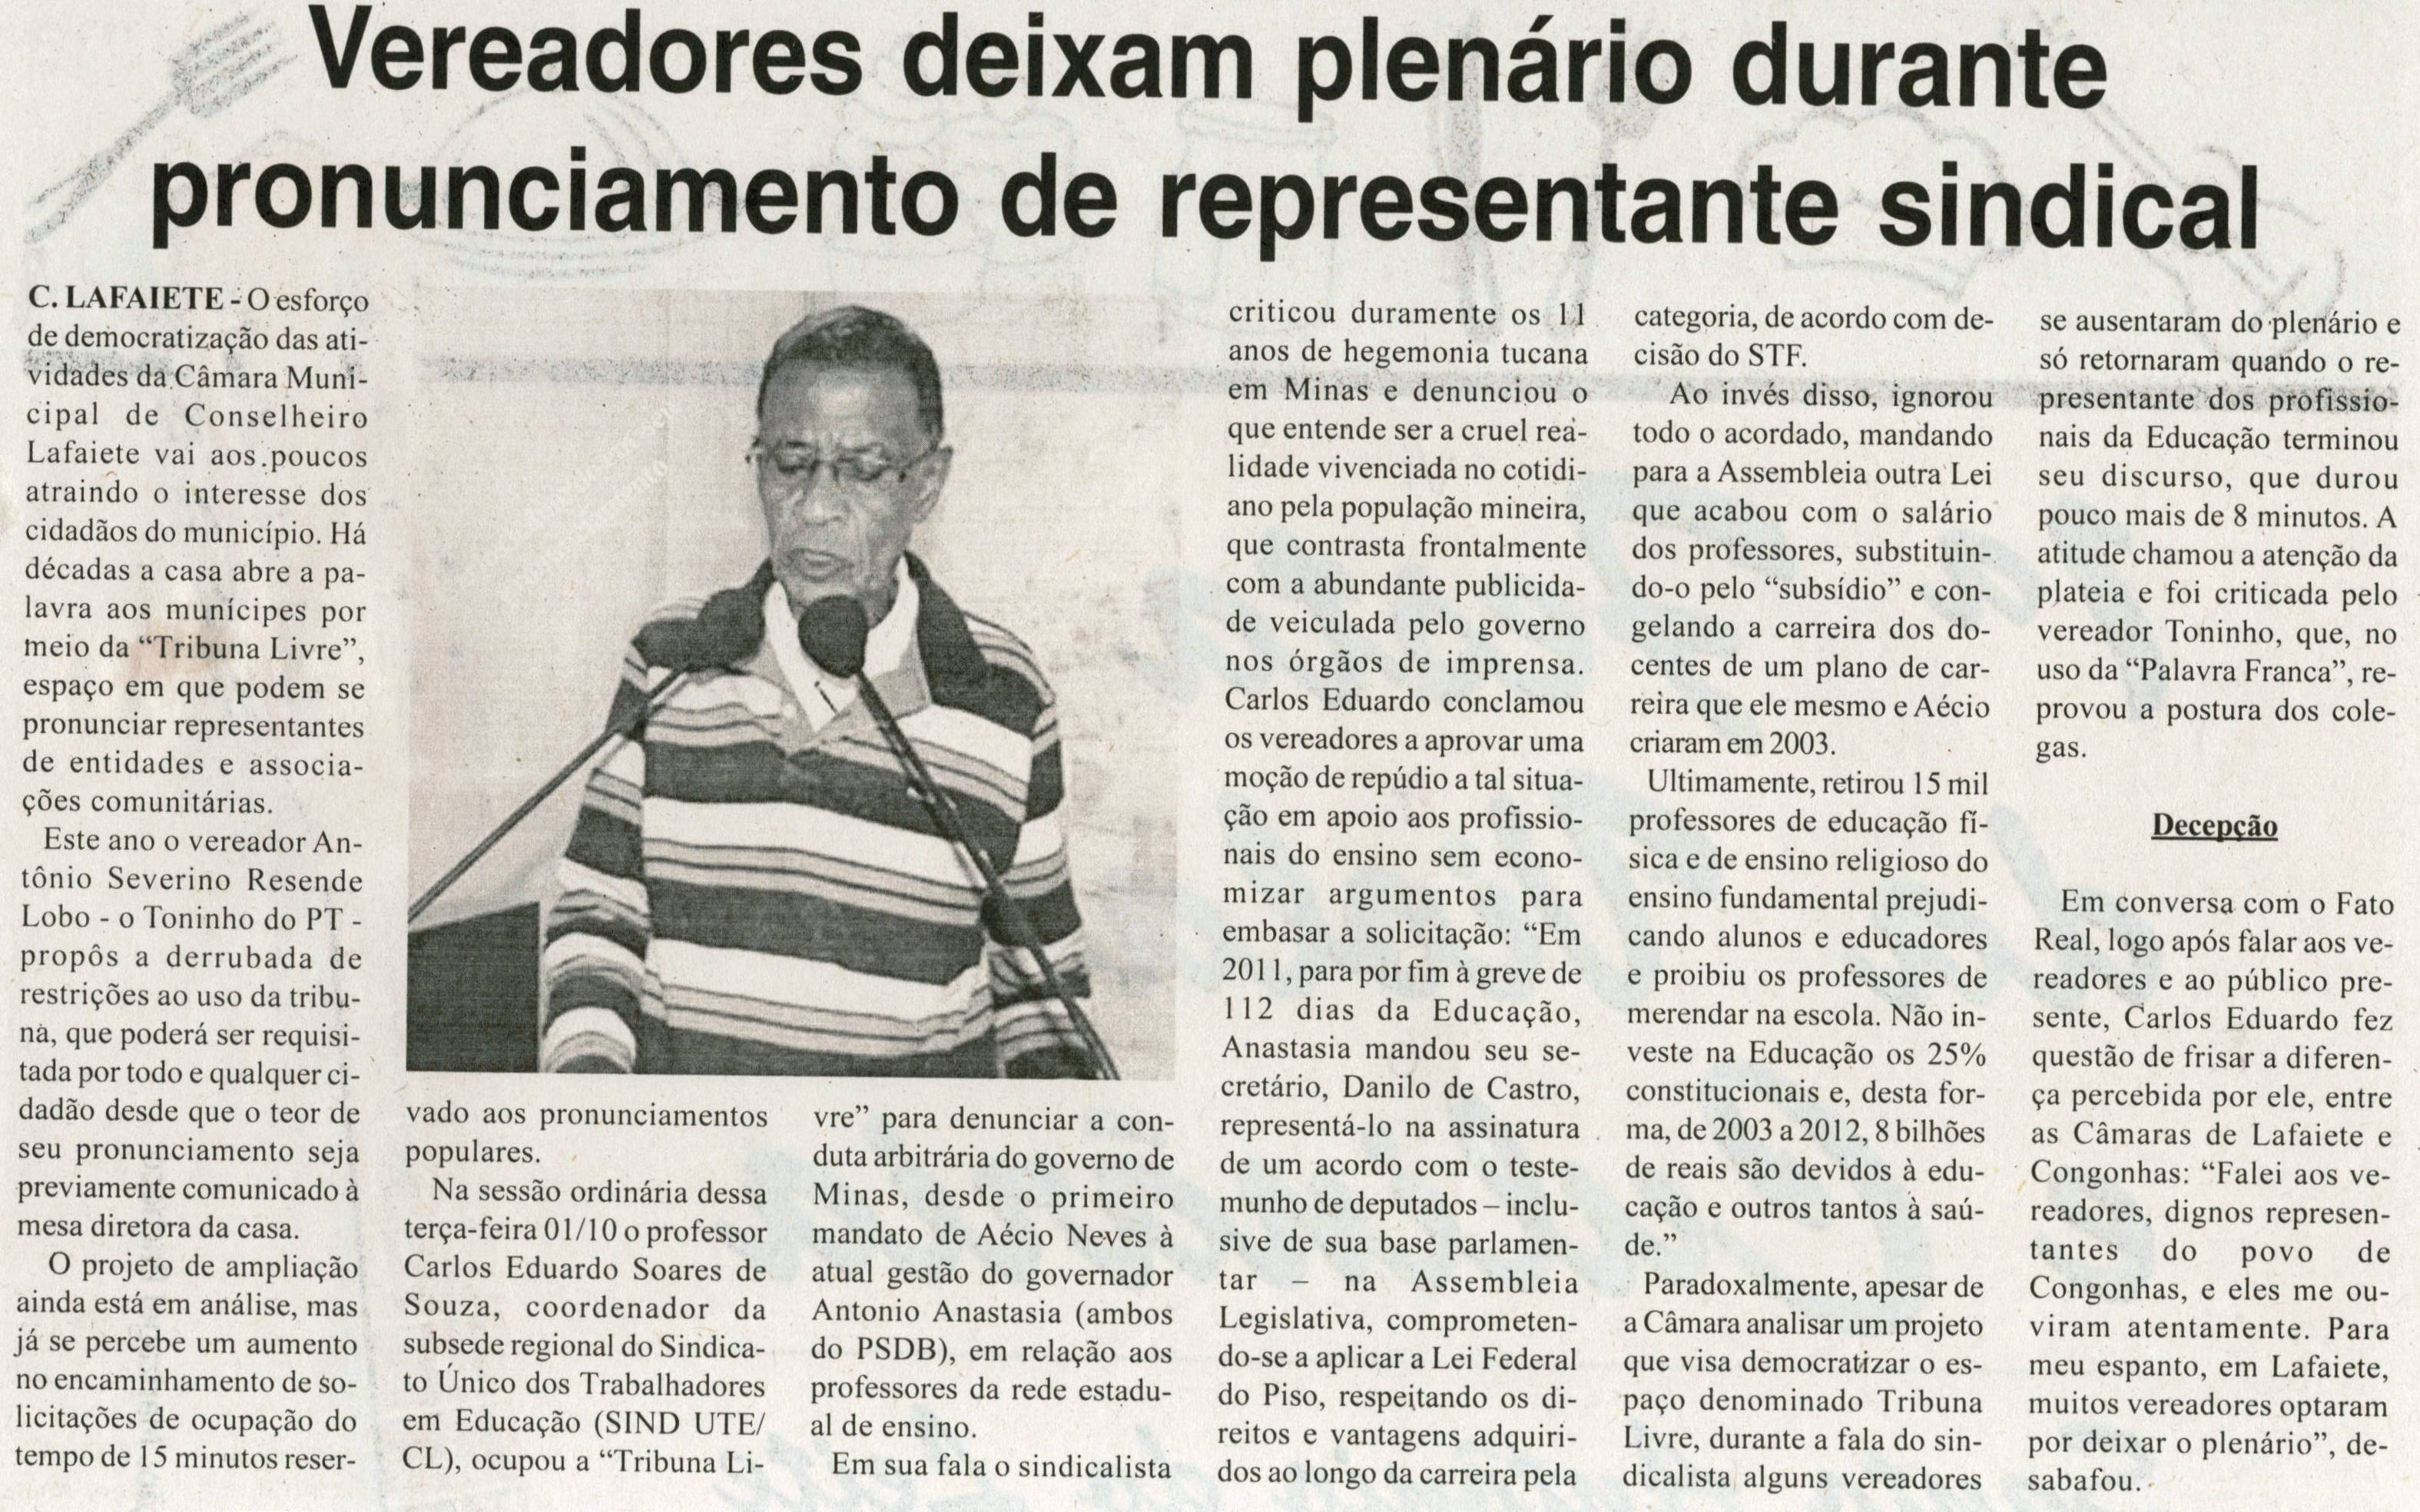 Vereadores deixam plenário durante pronunciamento de representante sindical. Jornal Tribuna Livre, Conselheiro Lafaiete,  Out. 2013, p. 09.